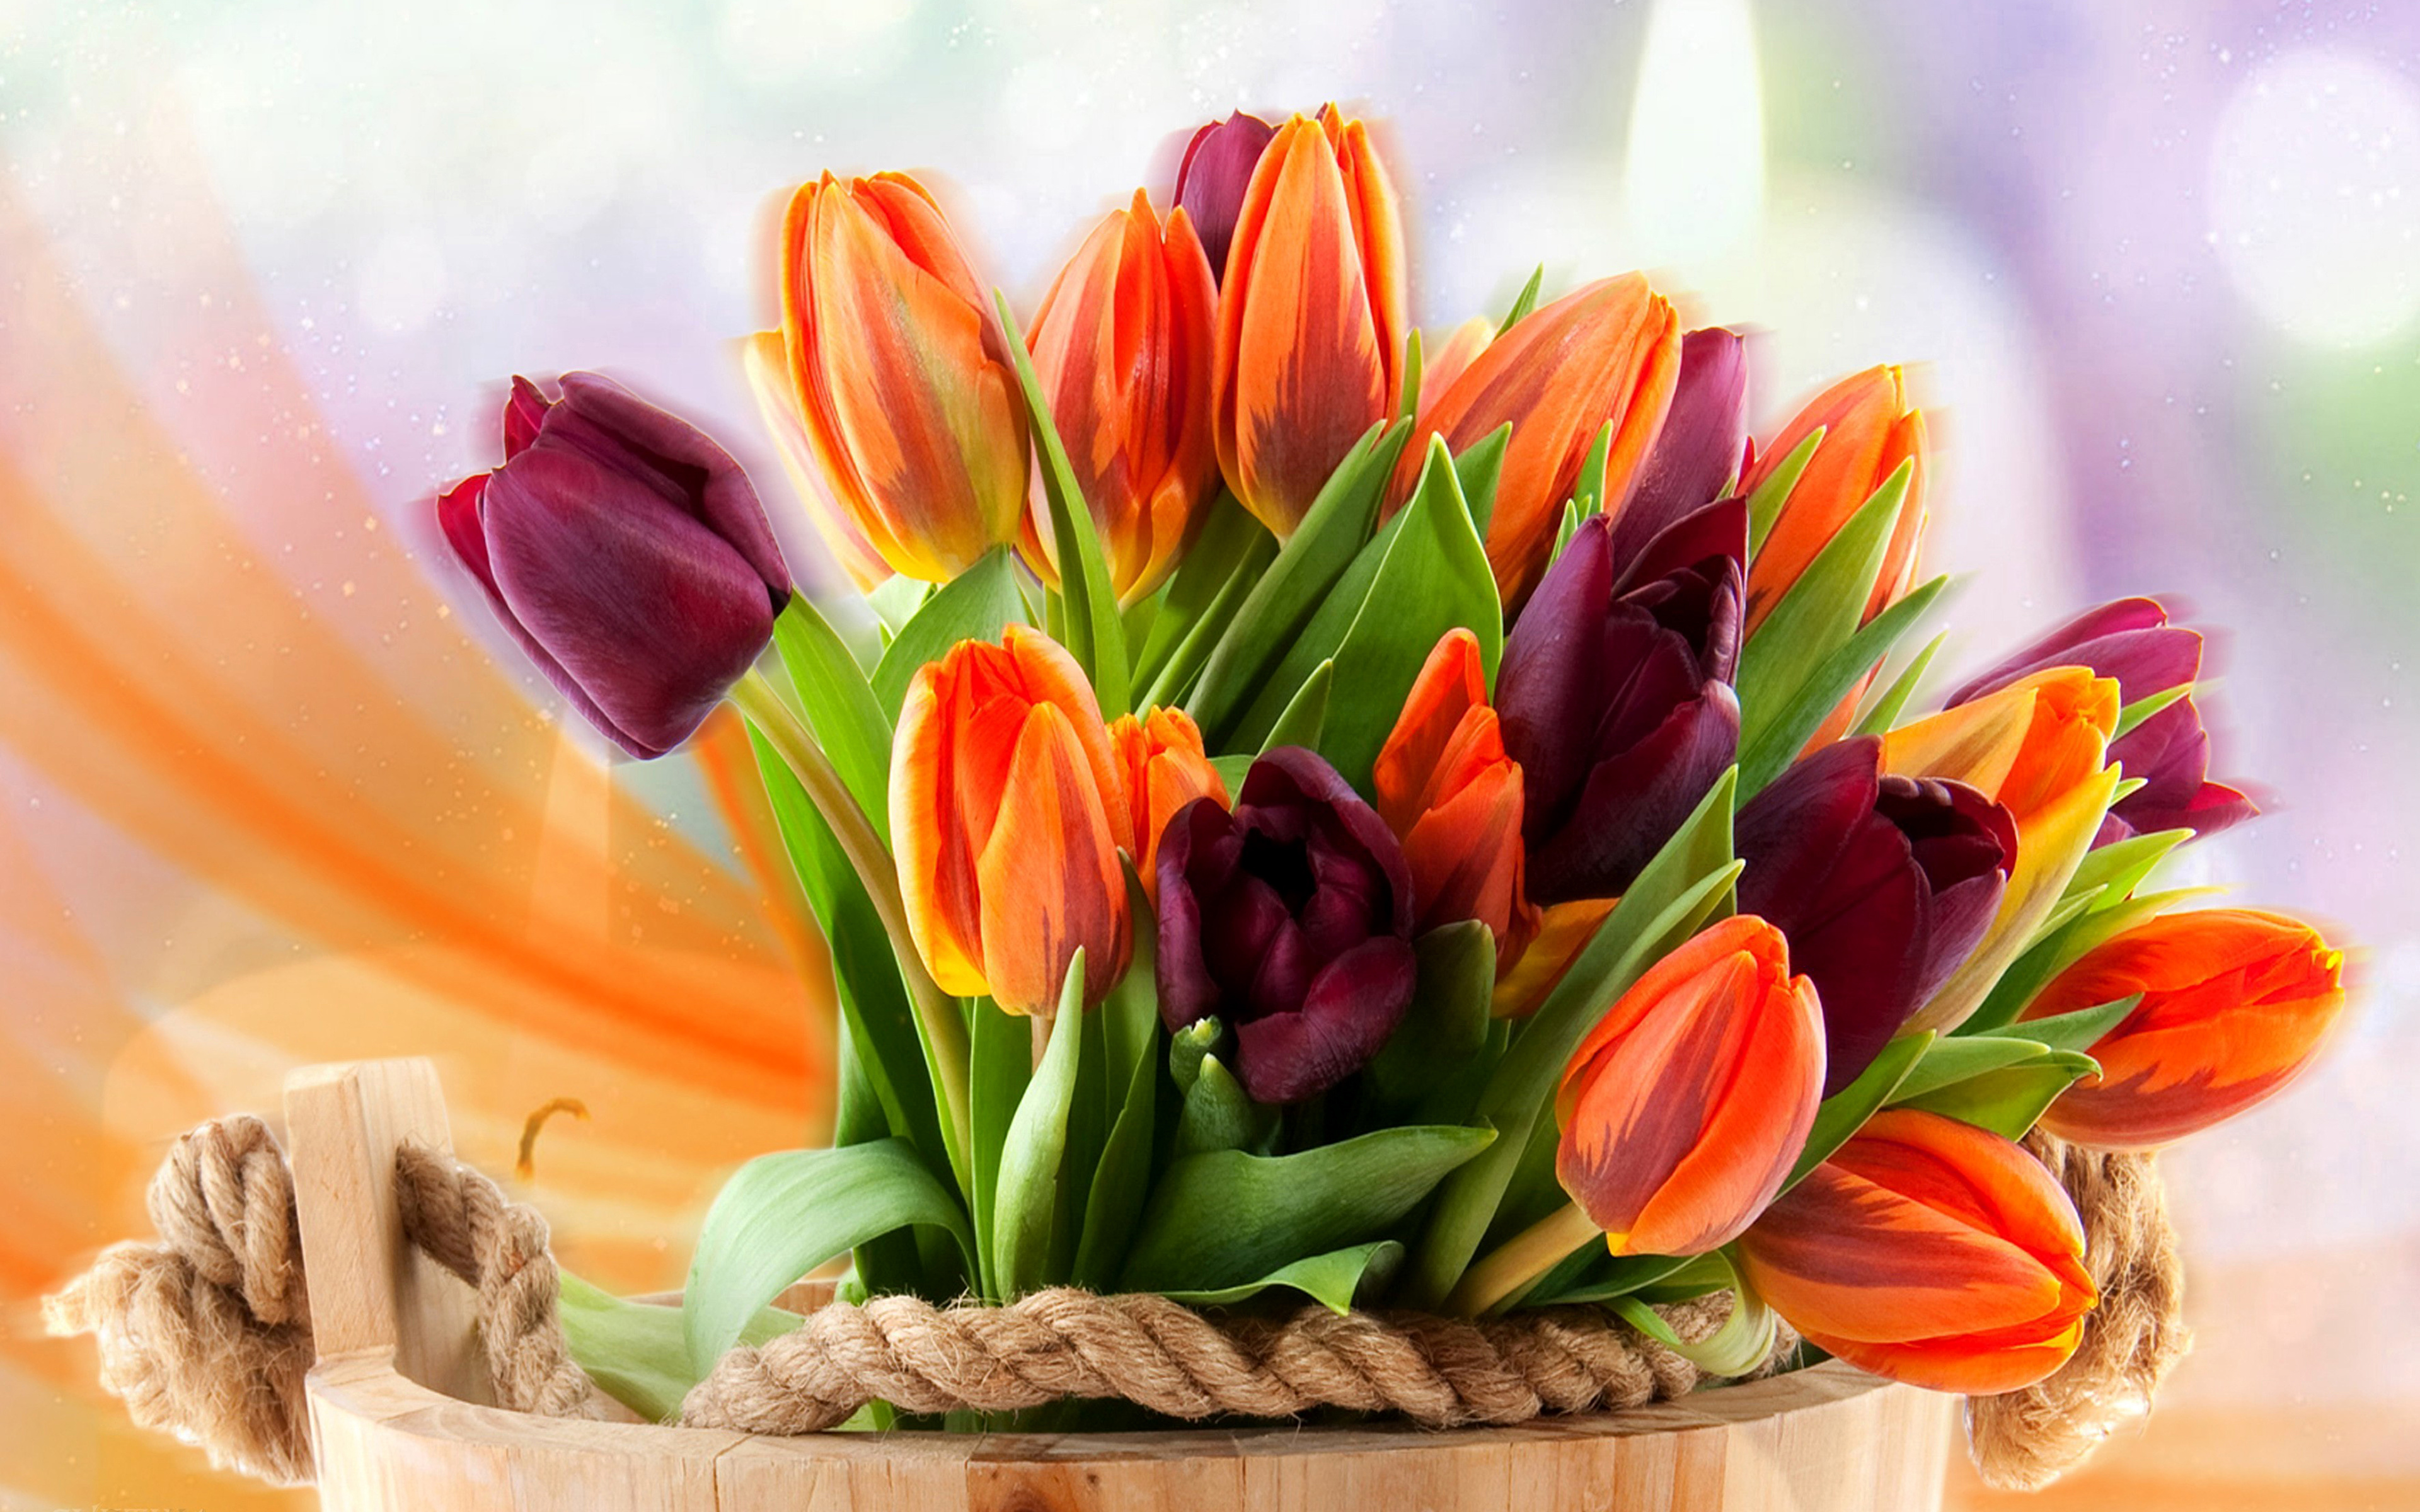 С днем рождения картинки с тюльпанами и пожеланиями